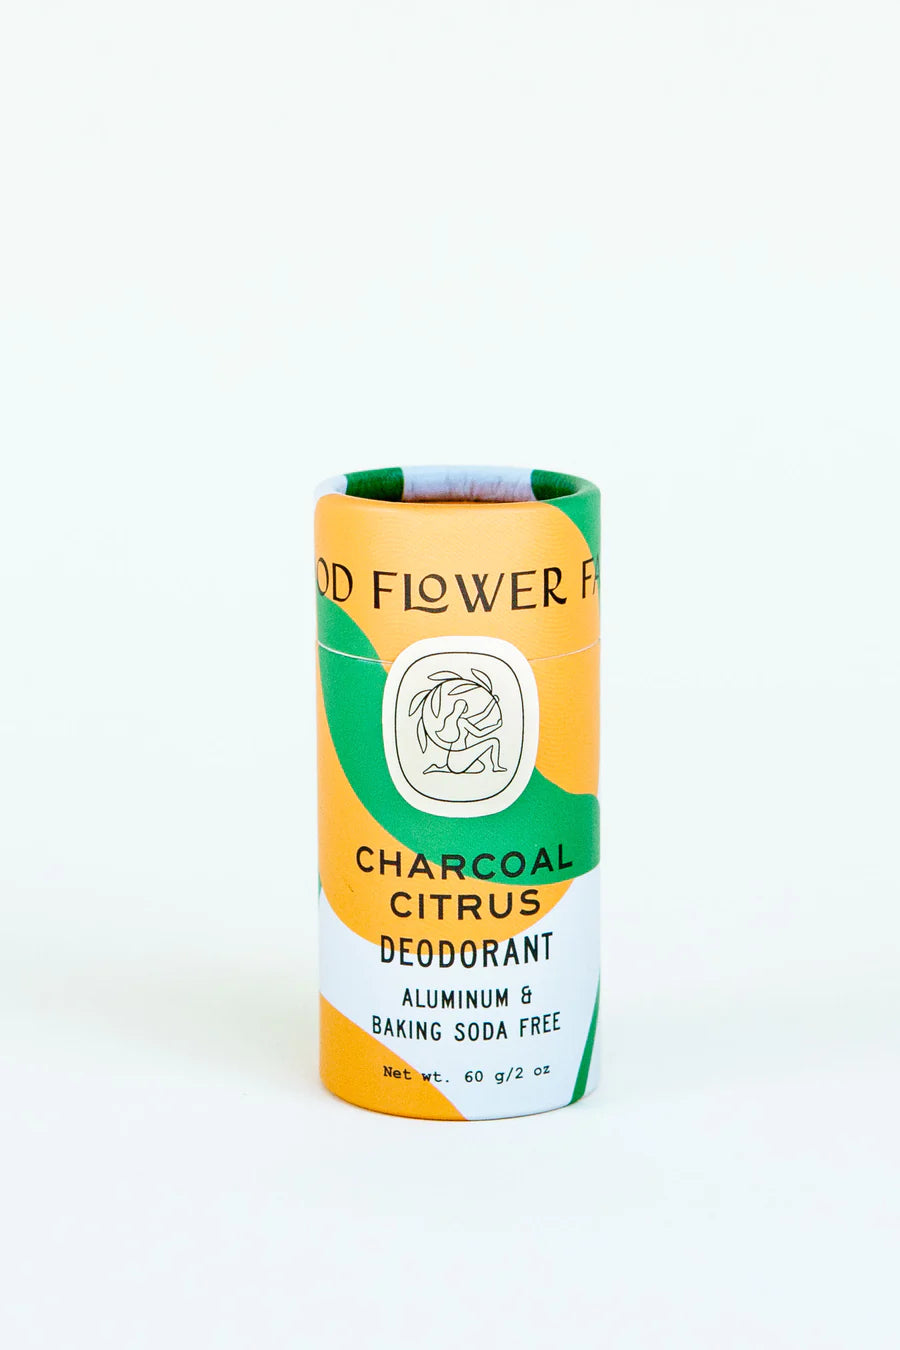 Charcoal Citrus Deodorant